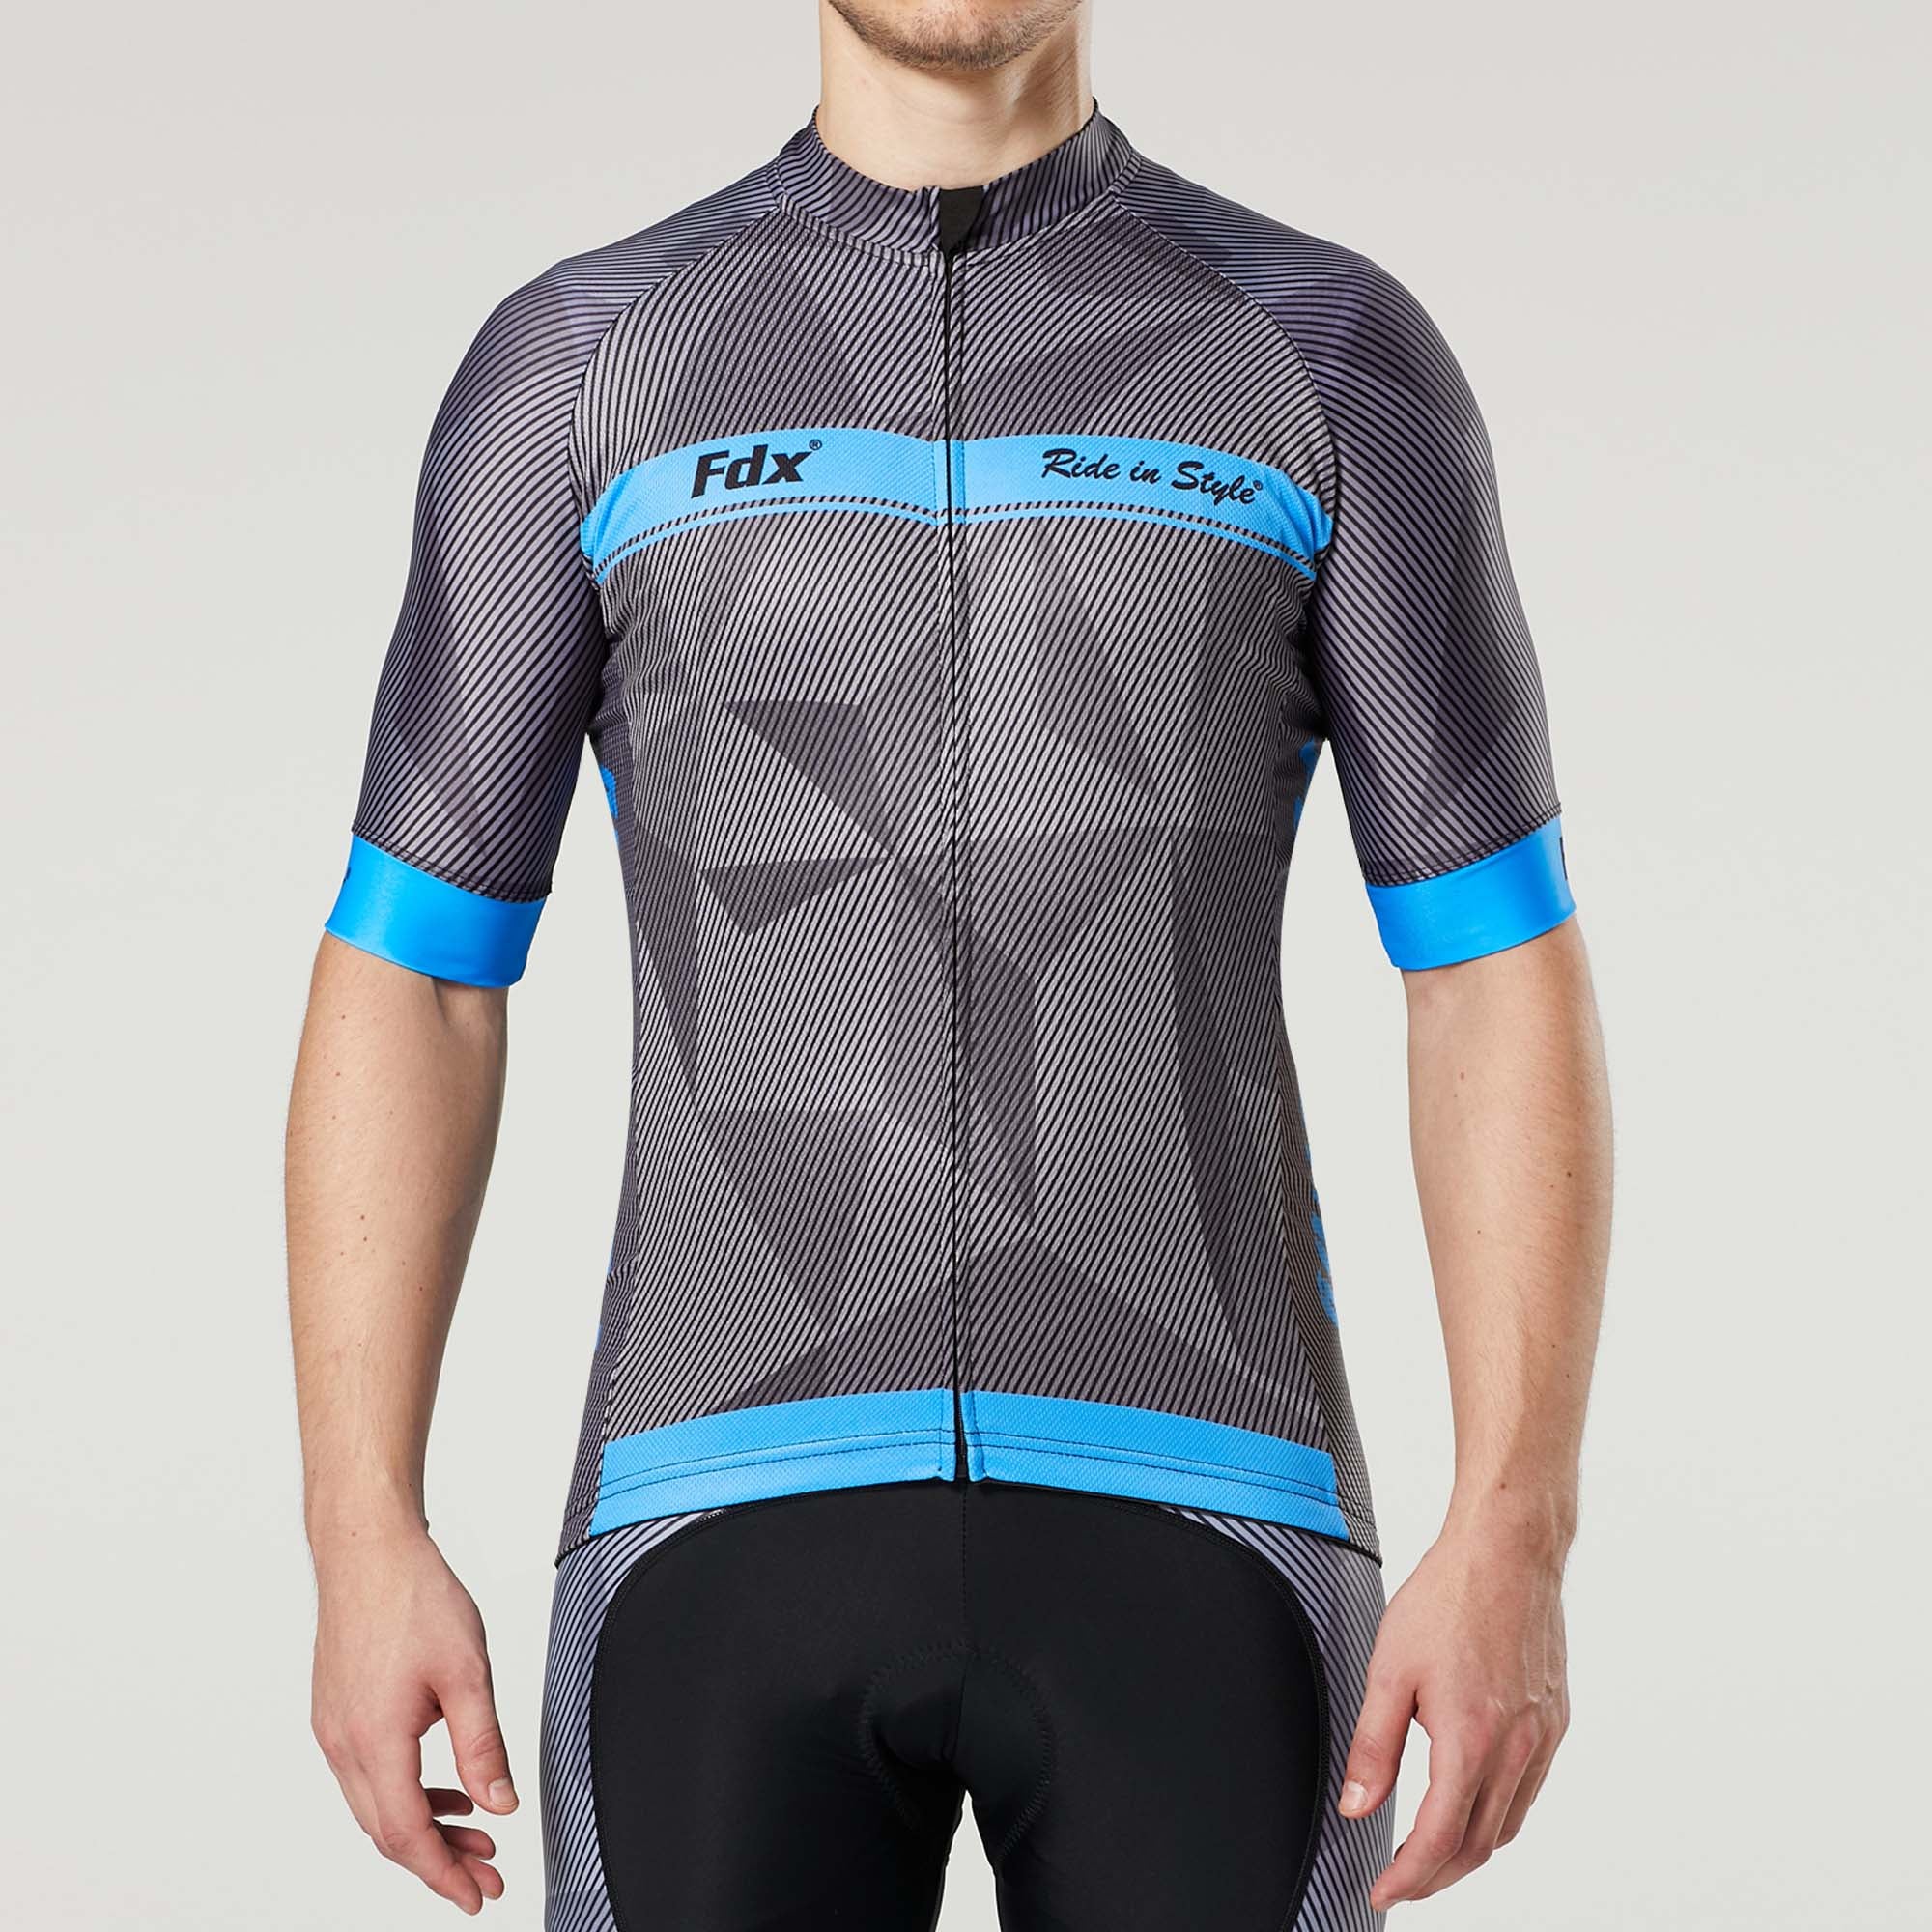 Fdx Mens Blue Short Sleeve Cycling Jersey for Summer Best Road Bike Wear Top Light Weight, Full Zipper, Pockets & Hi-viz Reflectors - Splinter